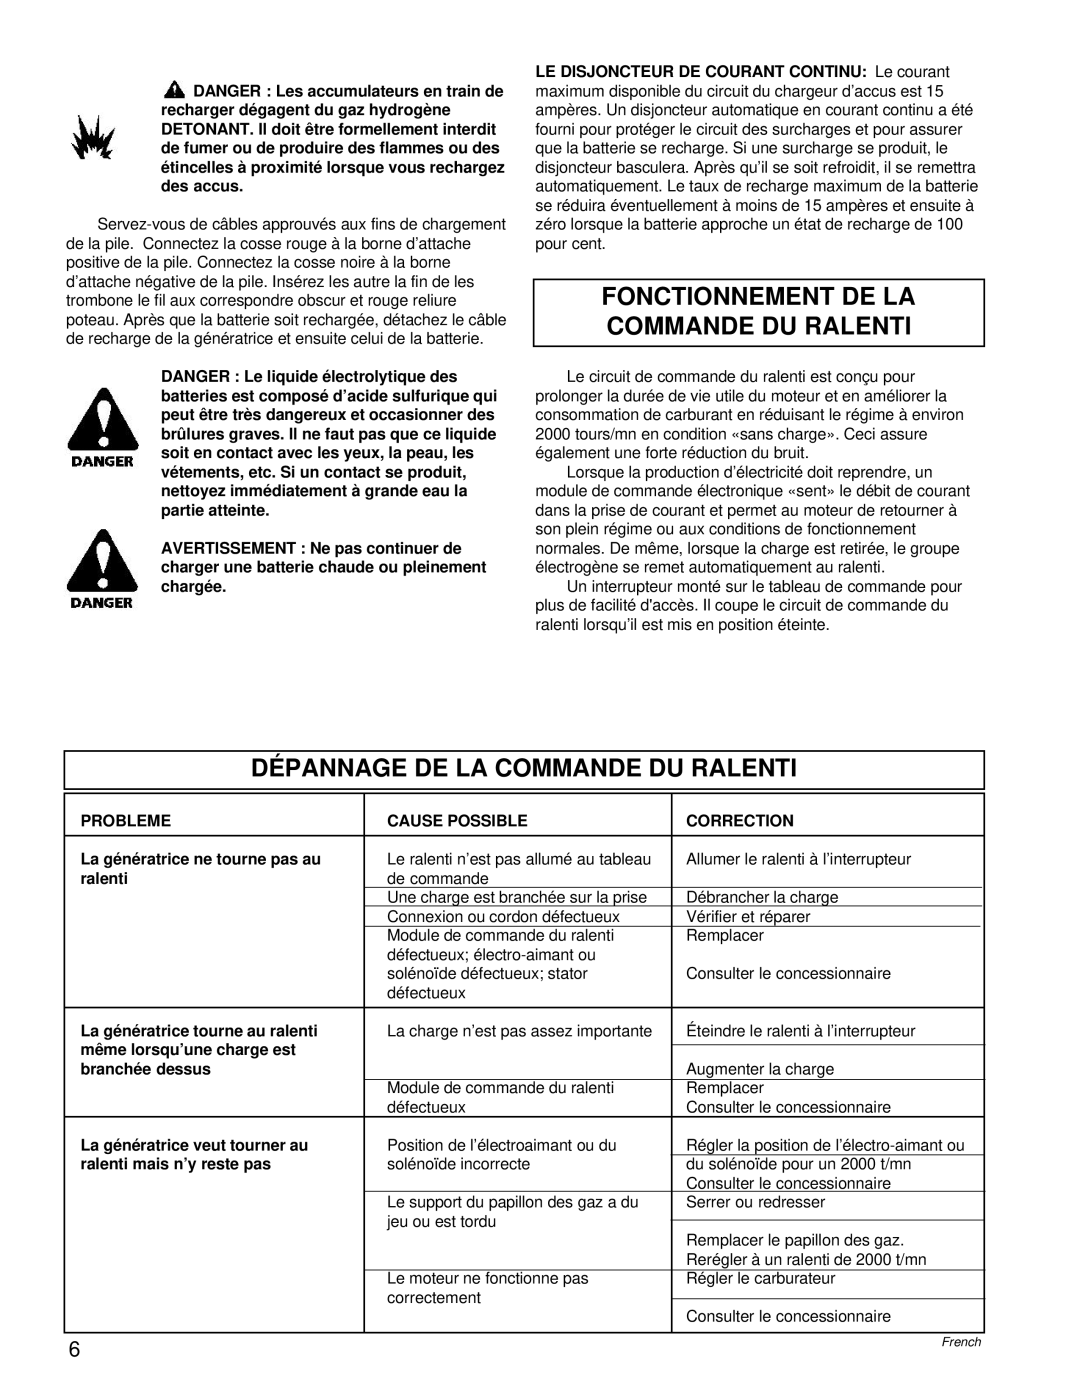 Powermate PM0496504.18 manual Fonctionnement De La Commande Du Ralenti, Dépannage De La Commande Du Ralenti 